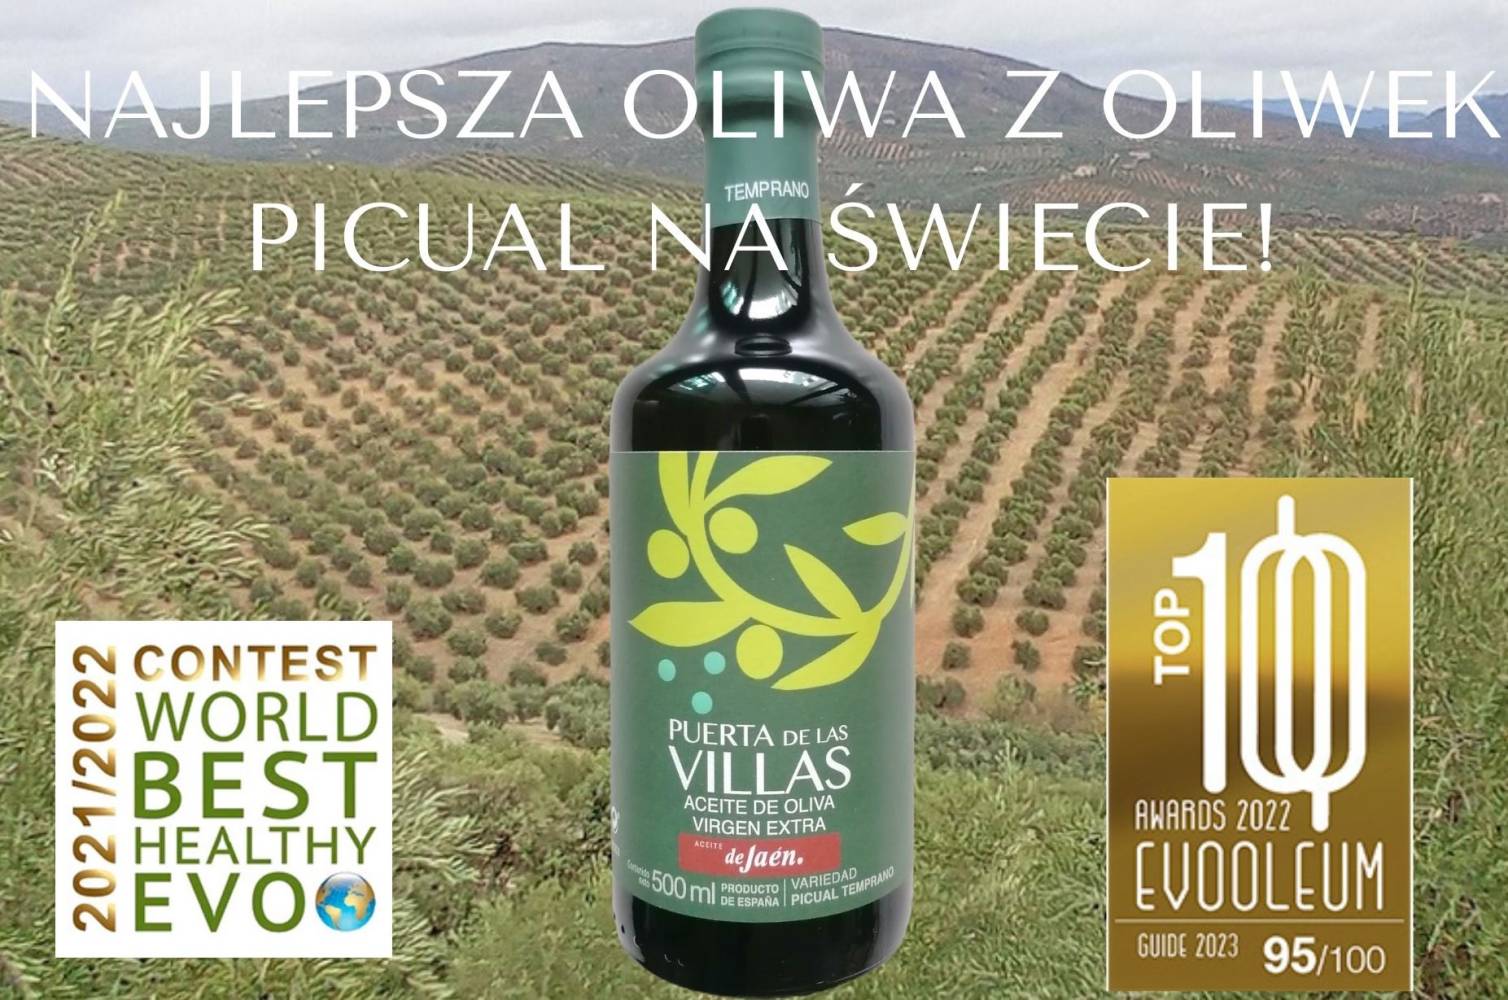 Najlepsza oliwa z oliwek picual na Świecie!